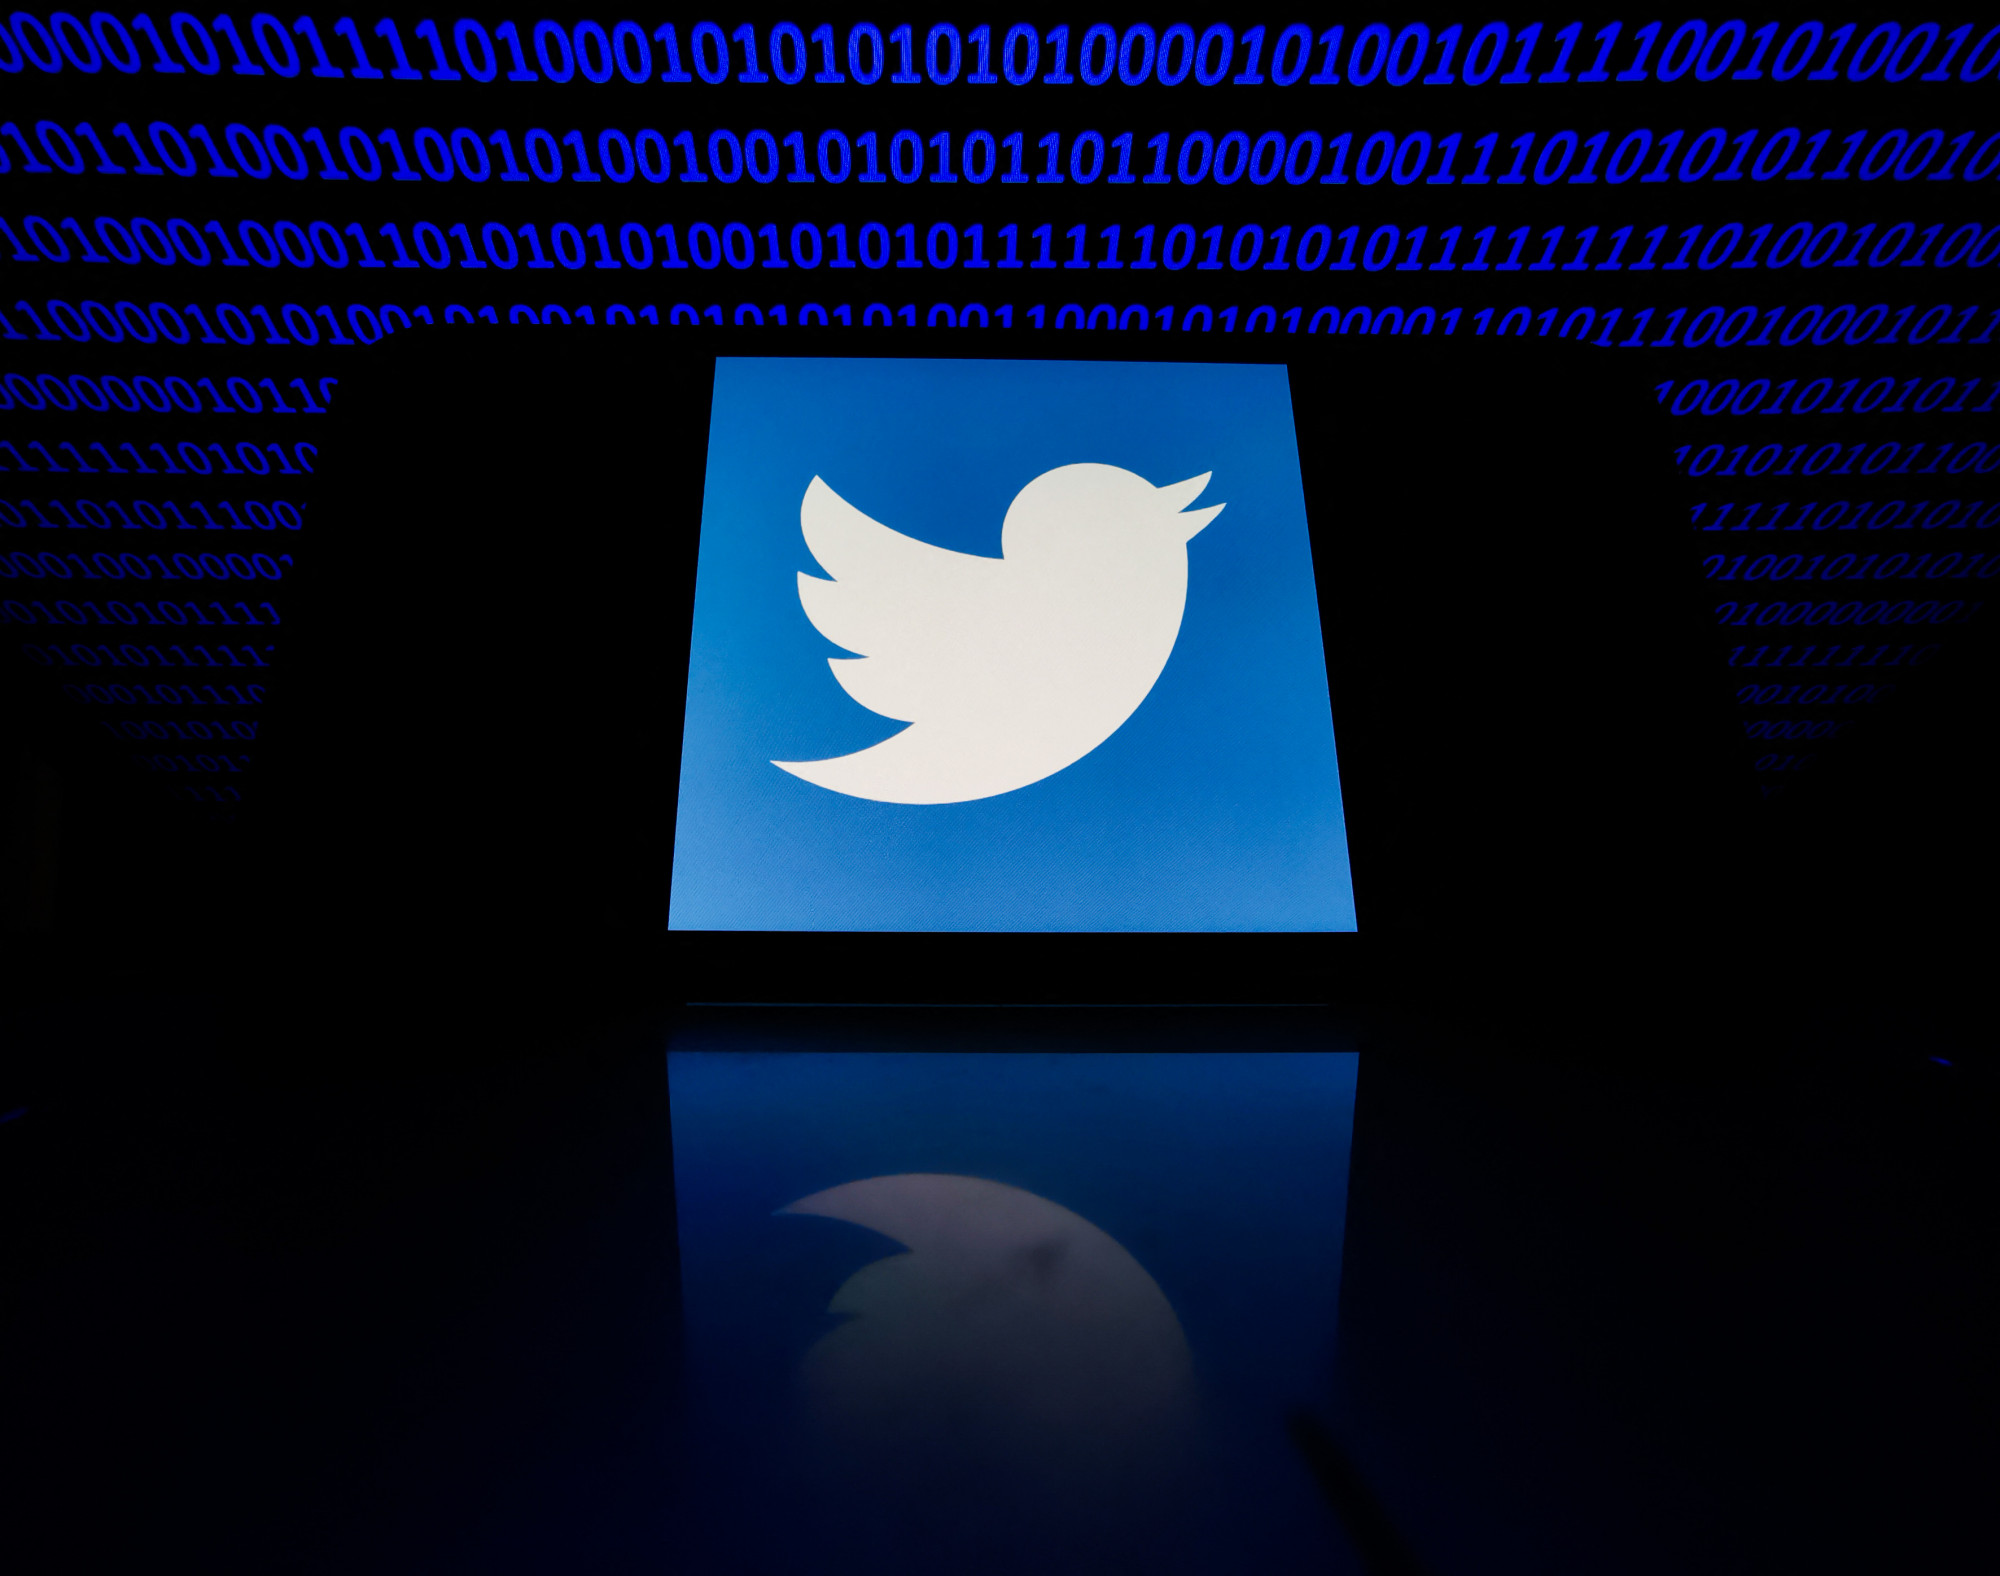 Brutális adatlopás, 200 millió Twitter-felhasználó emailcímét szerezték meg